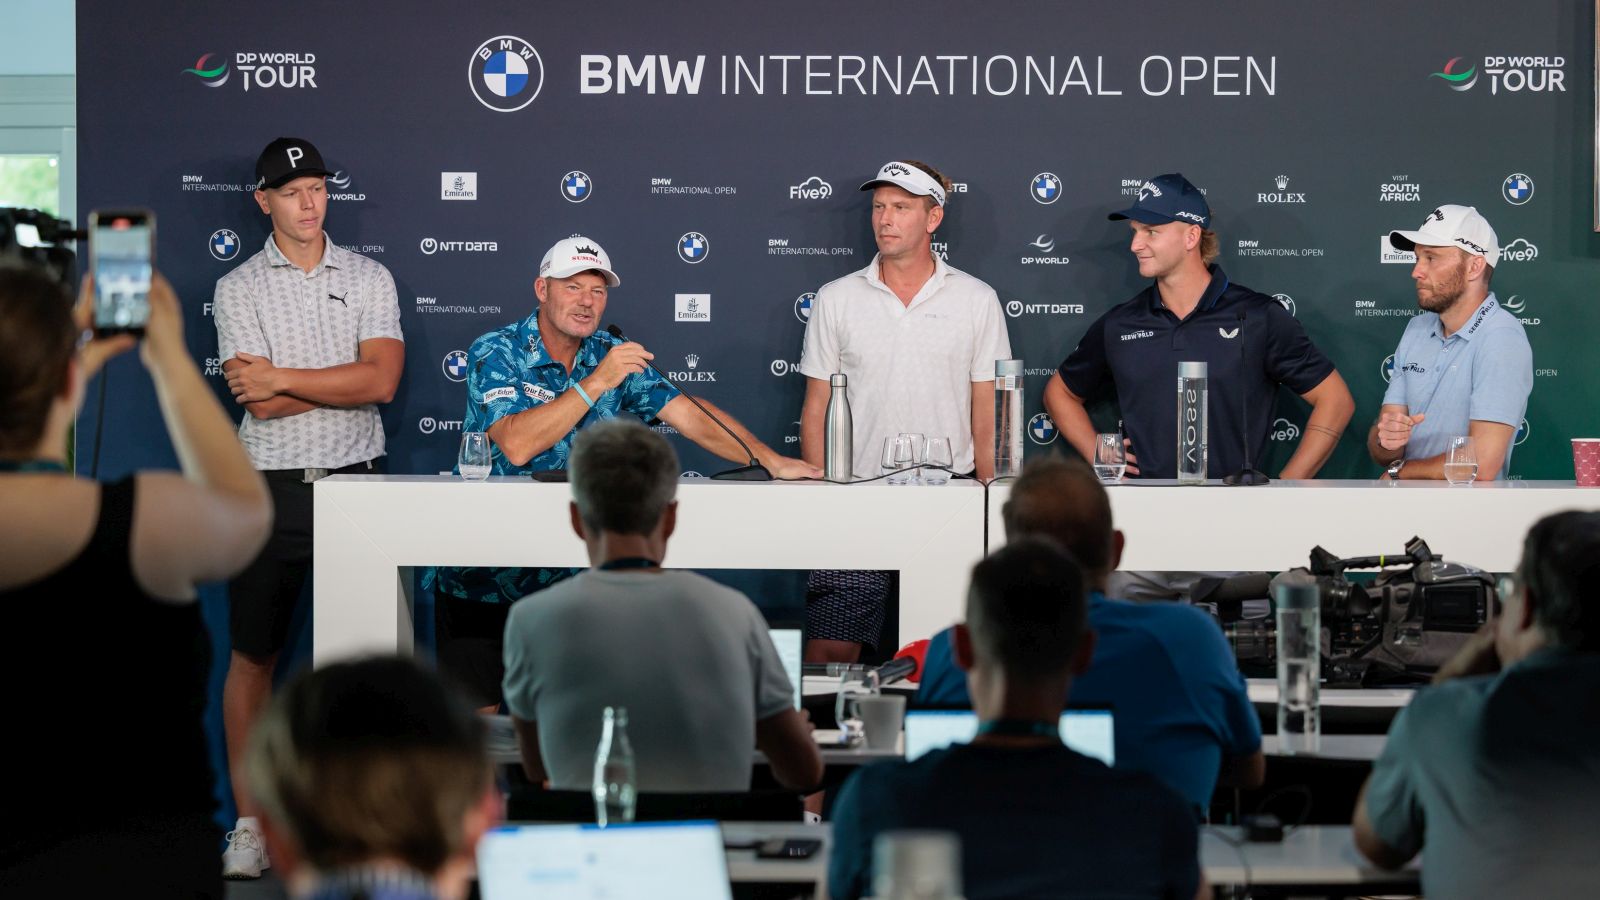 Fünf Deutsche im Fokus: Matti Schmid, Alex Cejka, Marcel Siem, Nick Bachem und Max Kieffer sind bei der BMW International Open dabei.